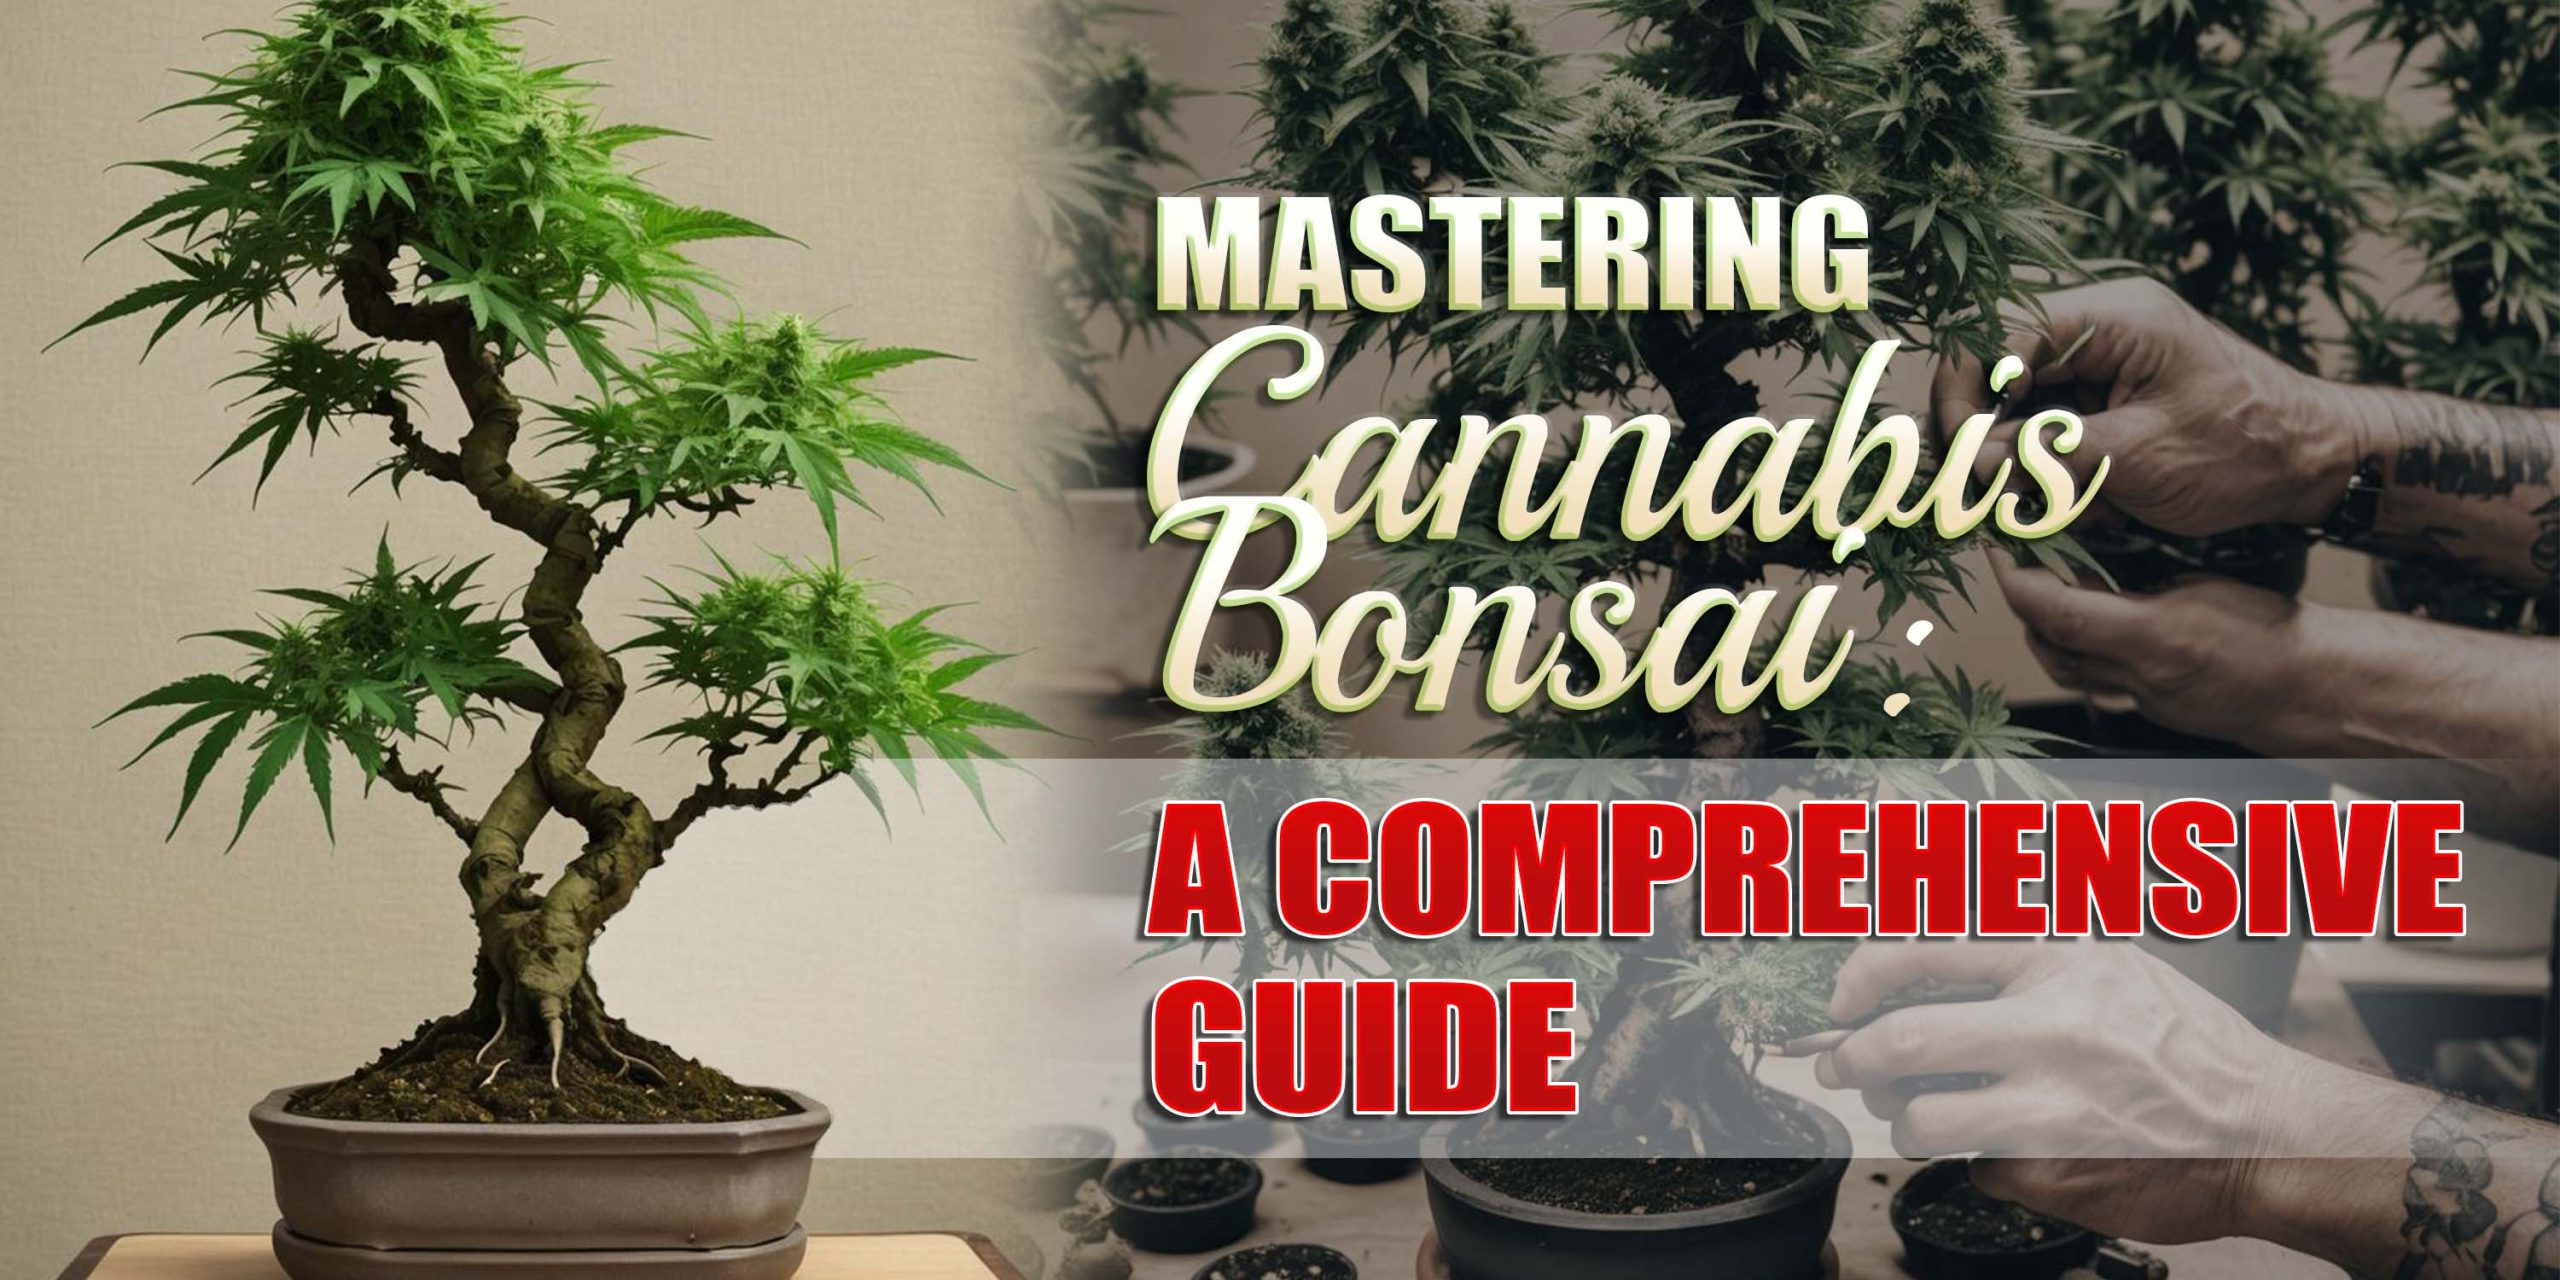 Mastering Cannabis Bonsai: A Comprehensive Guide